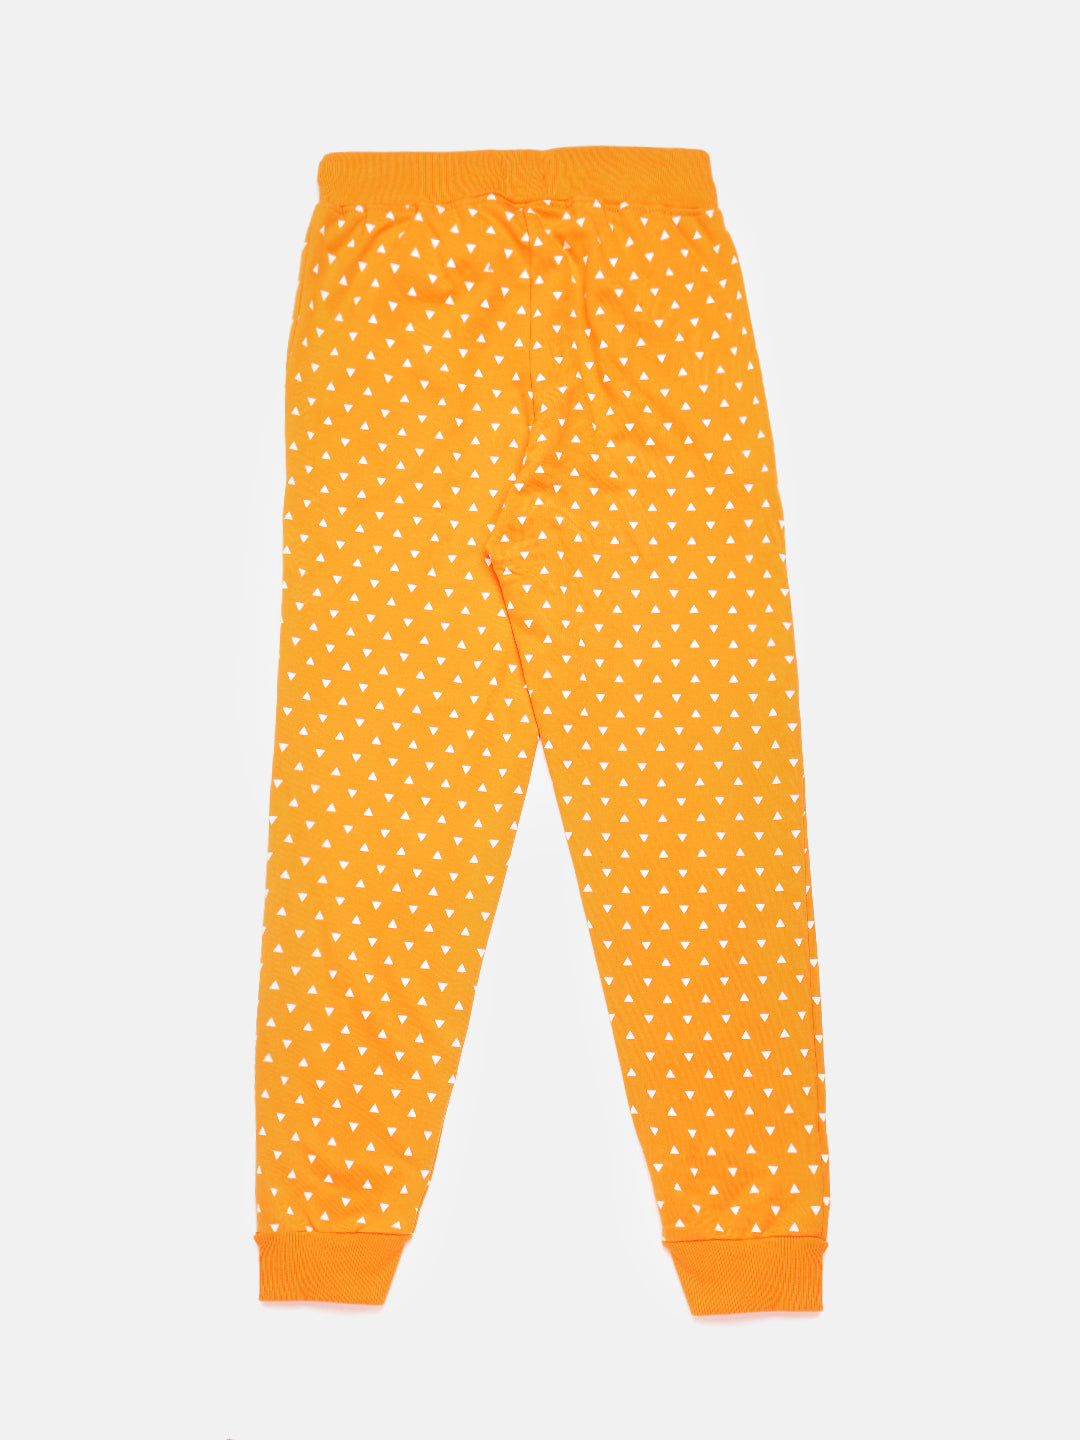 Kids - Girls Printed Jogger Orange